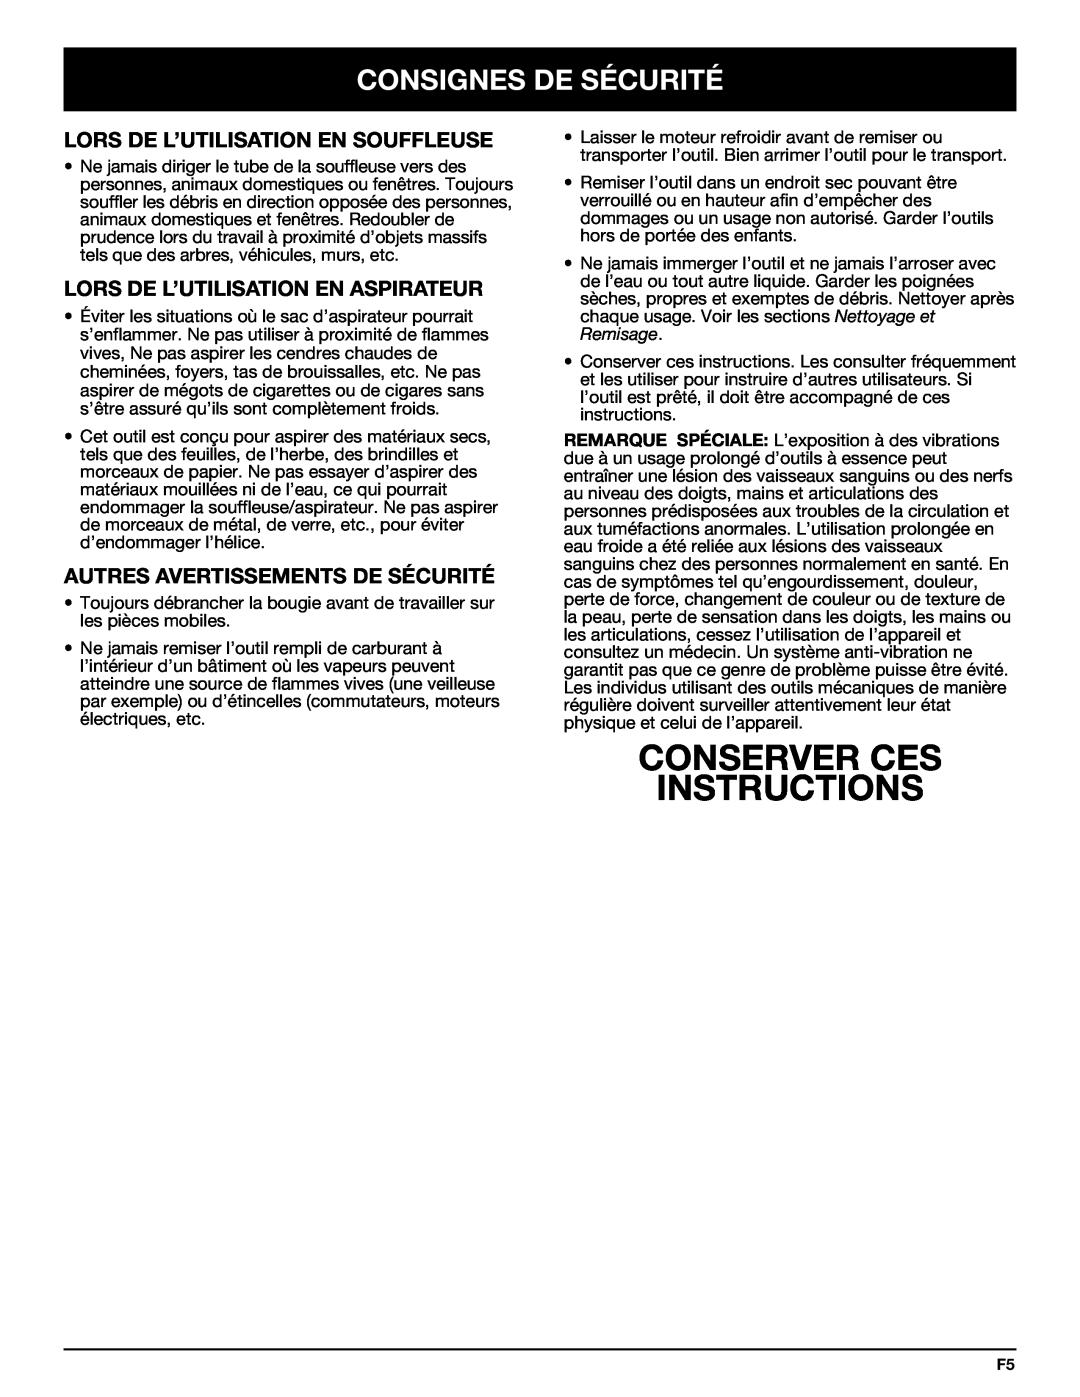 Bolens YM320BV manual Conserver Ces Instructions, Lors De L’Utilisation En Souffleuse, Lors De L’Utilisation En Aspirateur 